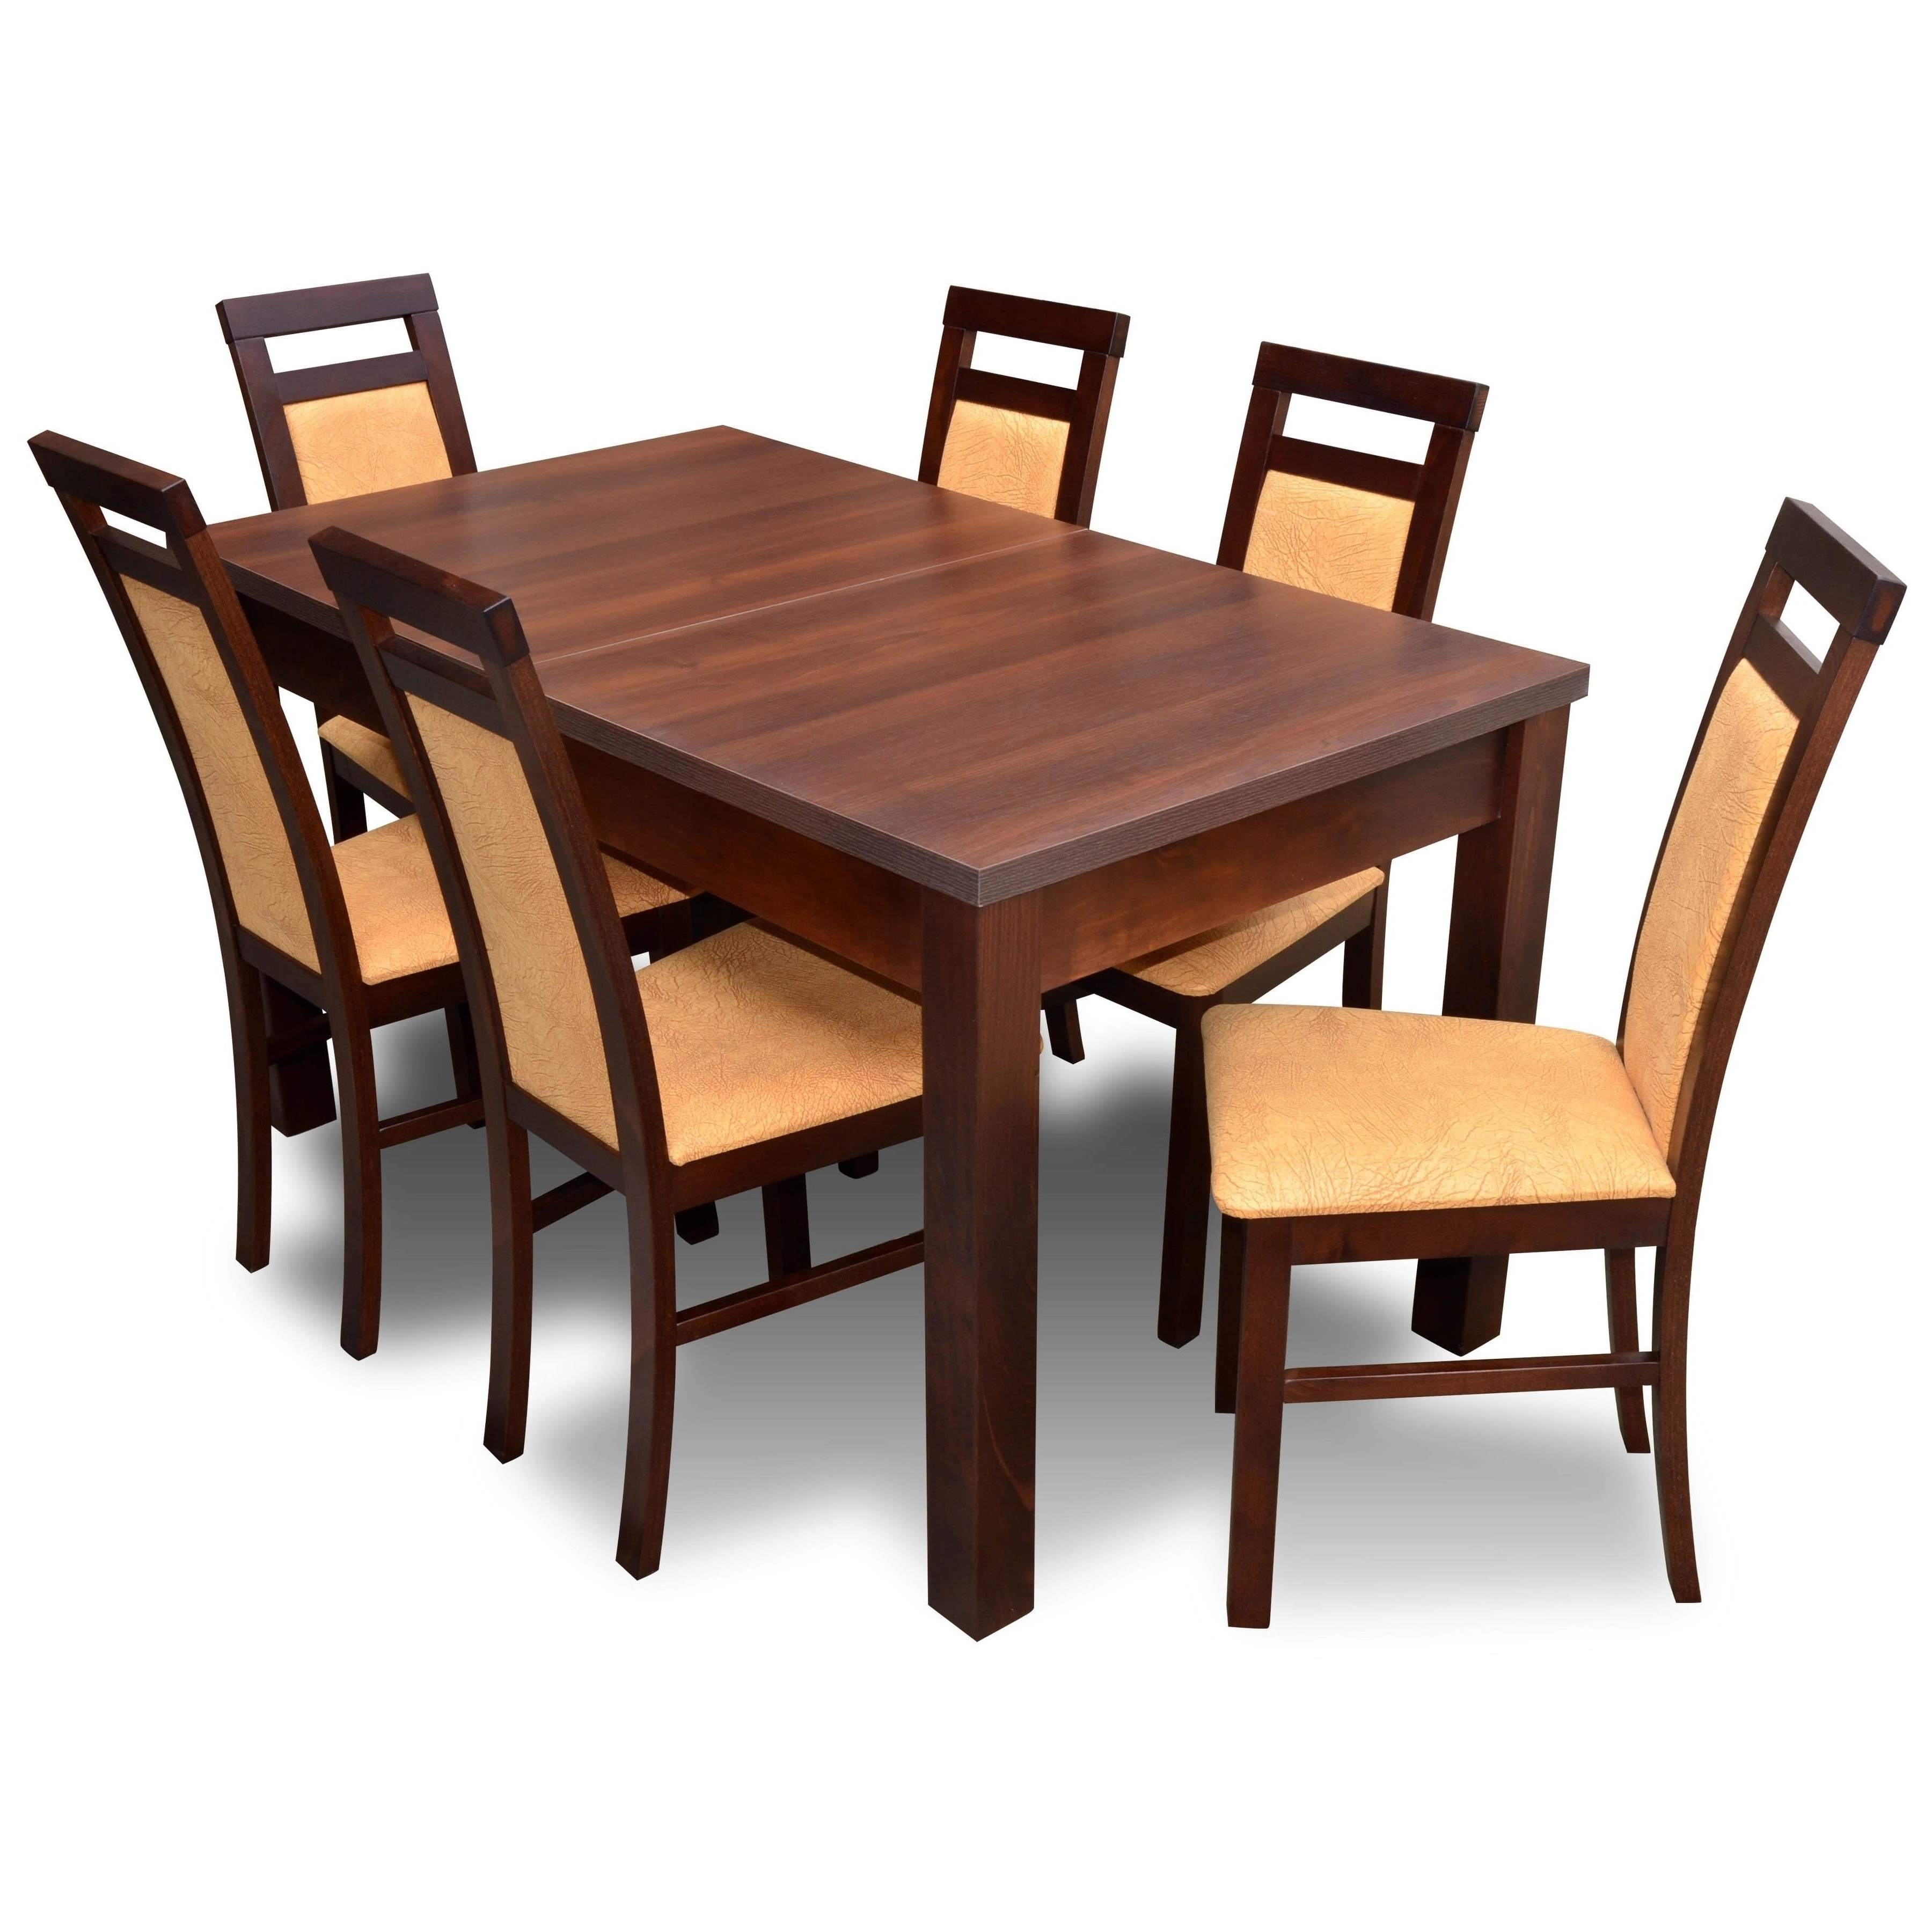 Stoły z krzesłami - do salonu, kuchni, jadalni, okrągłe, drewniane